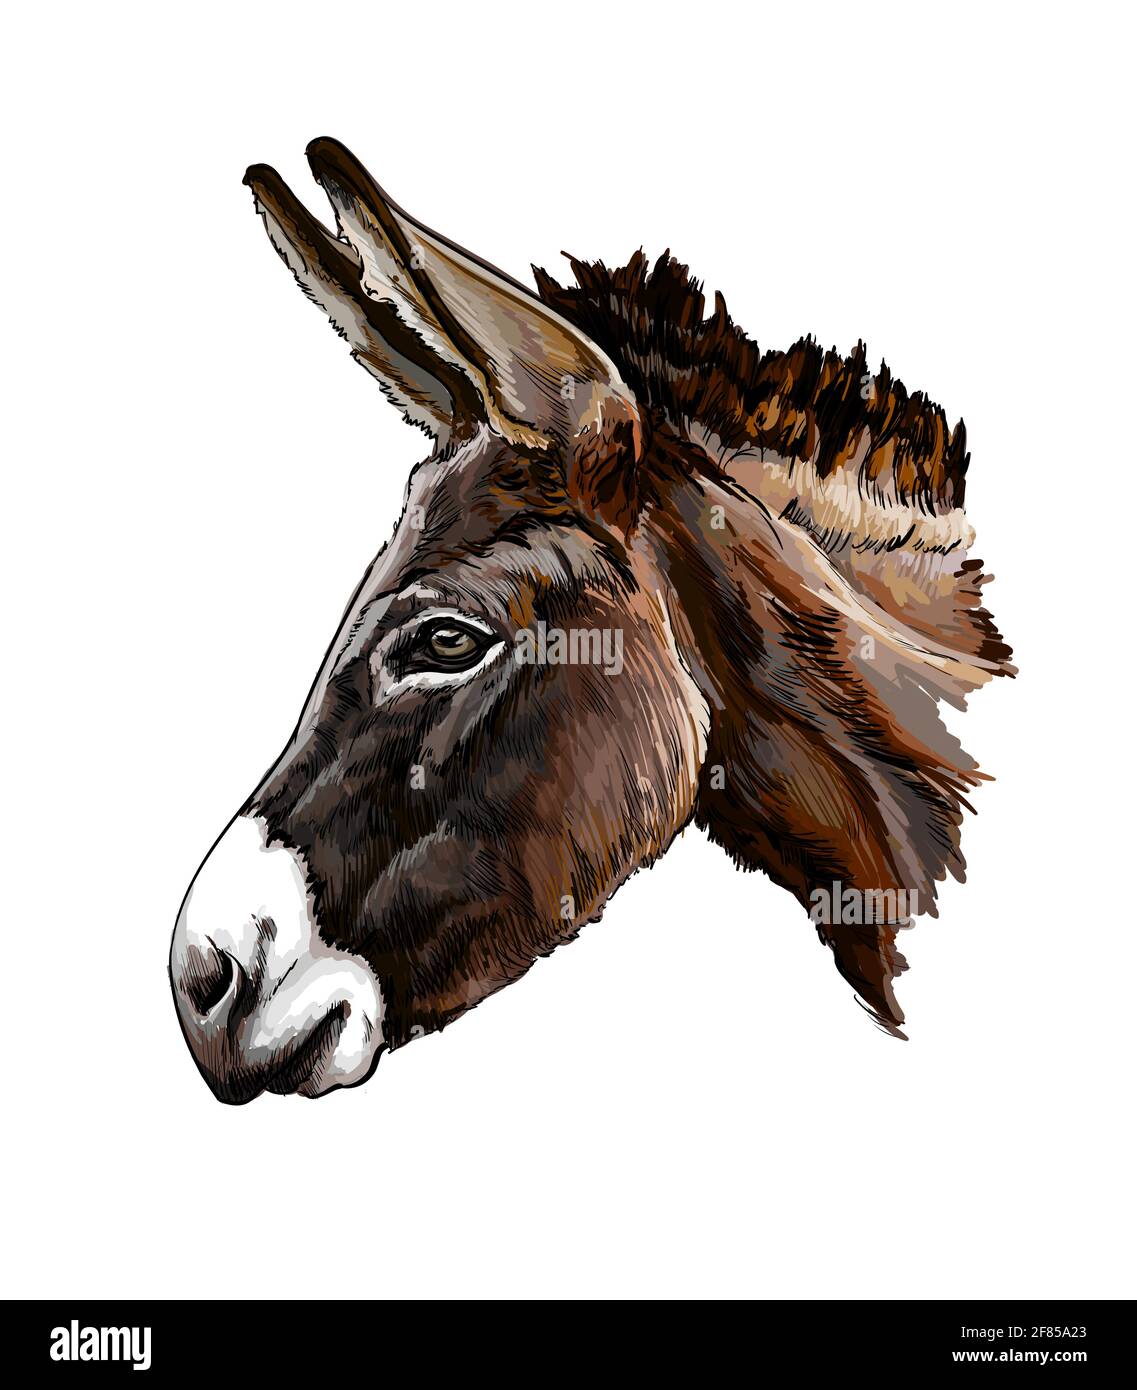 Portrait de tête d'âne d'une touche d'aquarelle, dessin coloré, réaliste. Illustration vectorielle des peintures Illustration de Vecteur